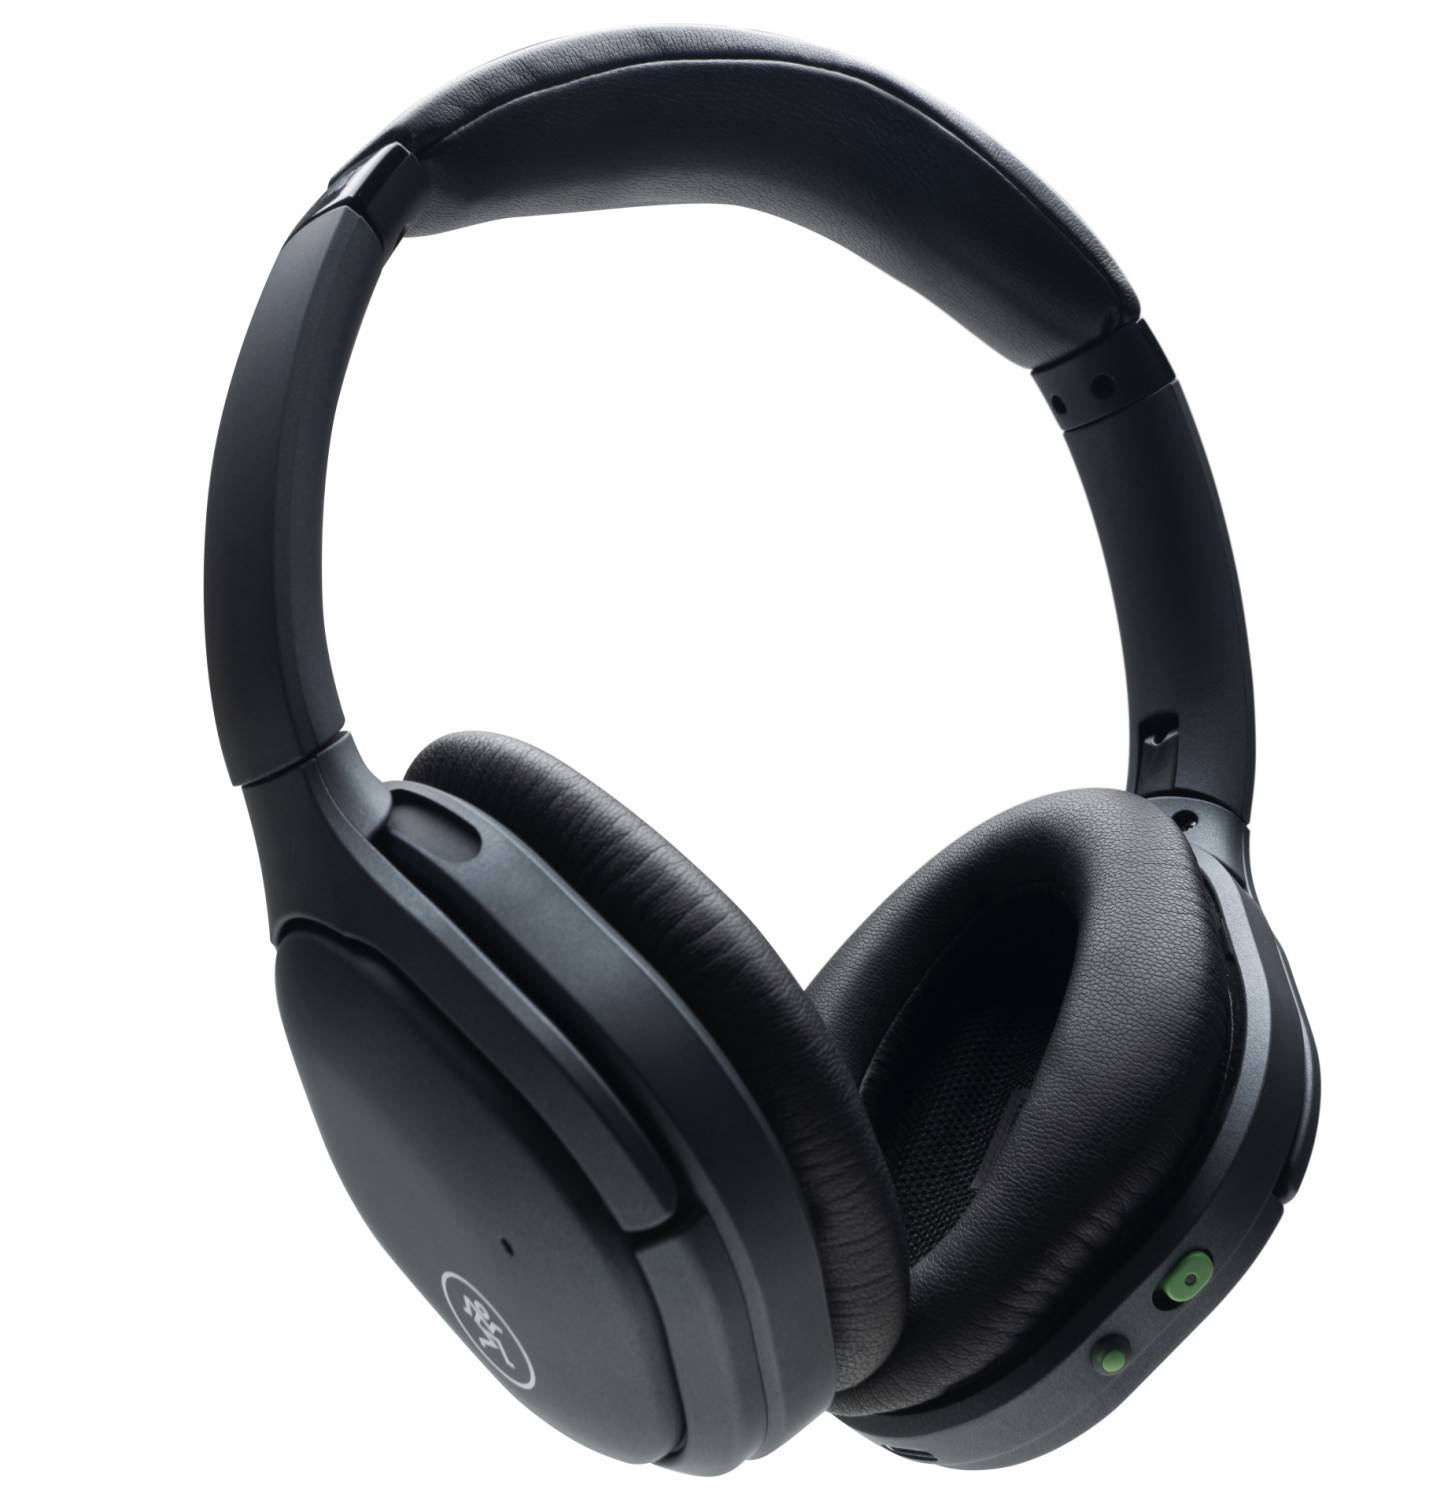 Produktvorstellung Mackie stellt neue drahtlose Kopfhörer und In-Ear-Hörer mit Noise-Cancelling vor - News, Bild 2